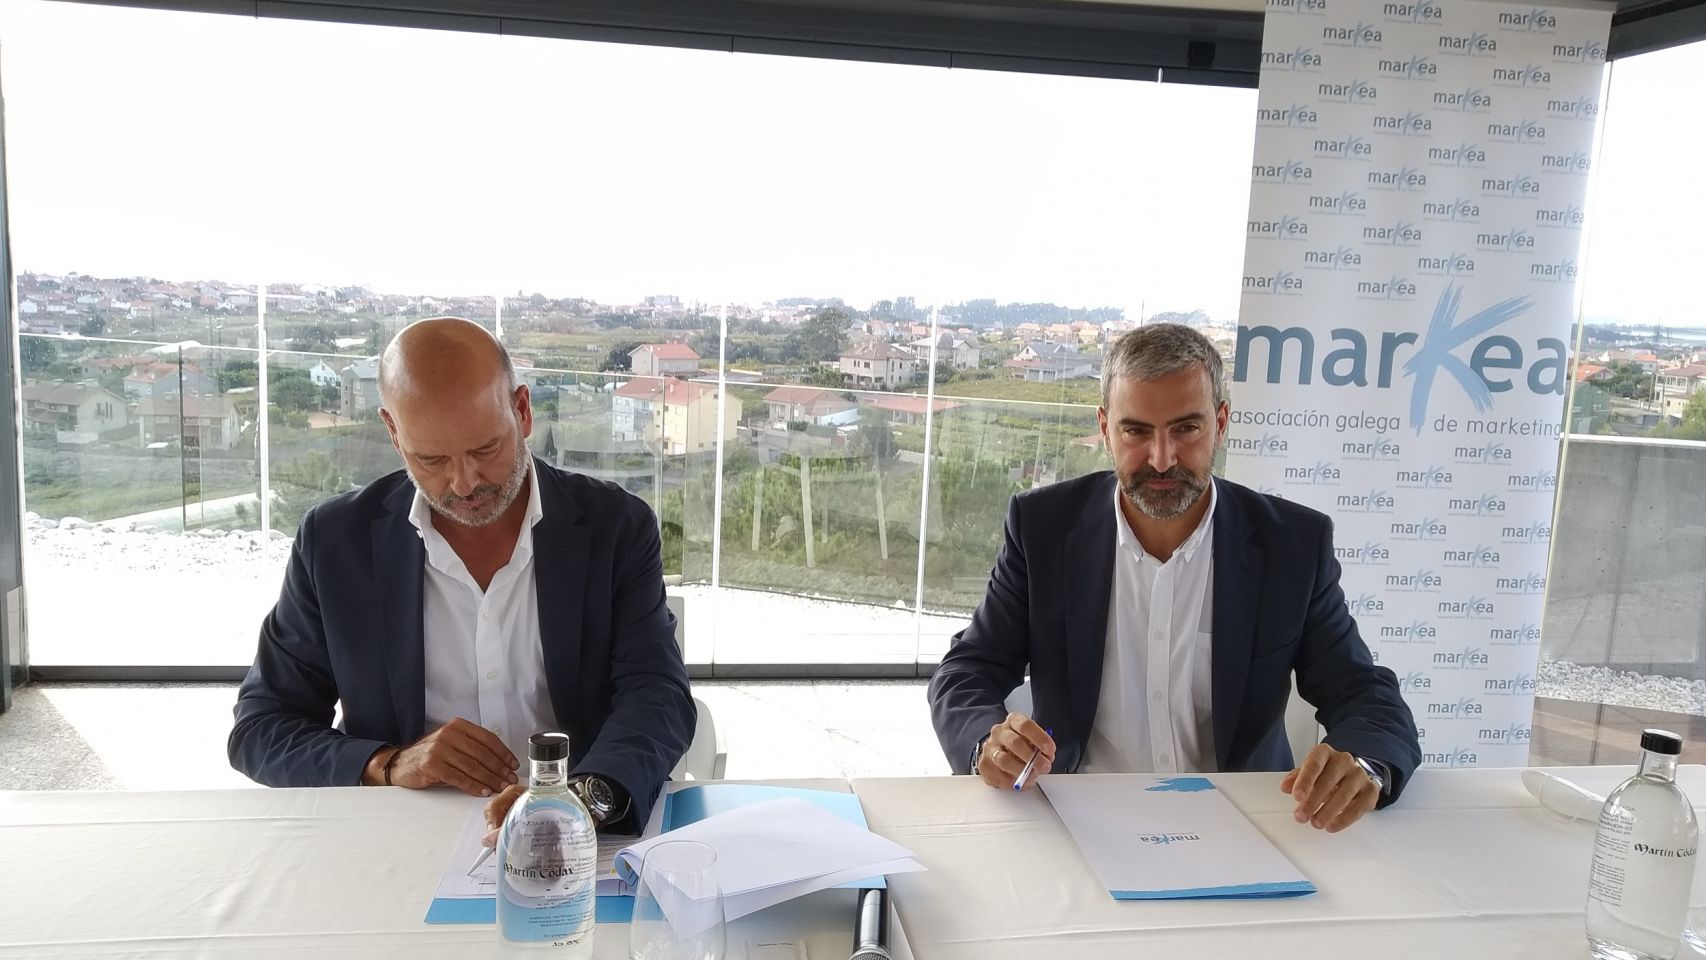 Los presidentes de Markea, Xose Luis Reza, y de APPM, Carlos Sá, firman el acuerdo.